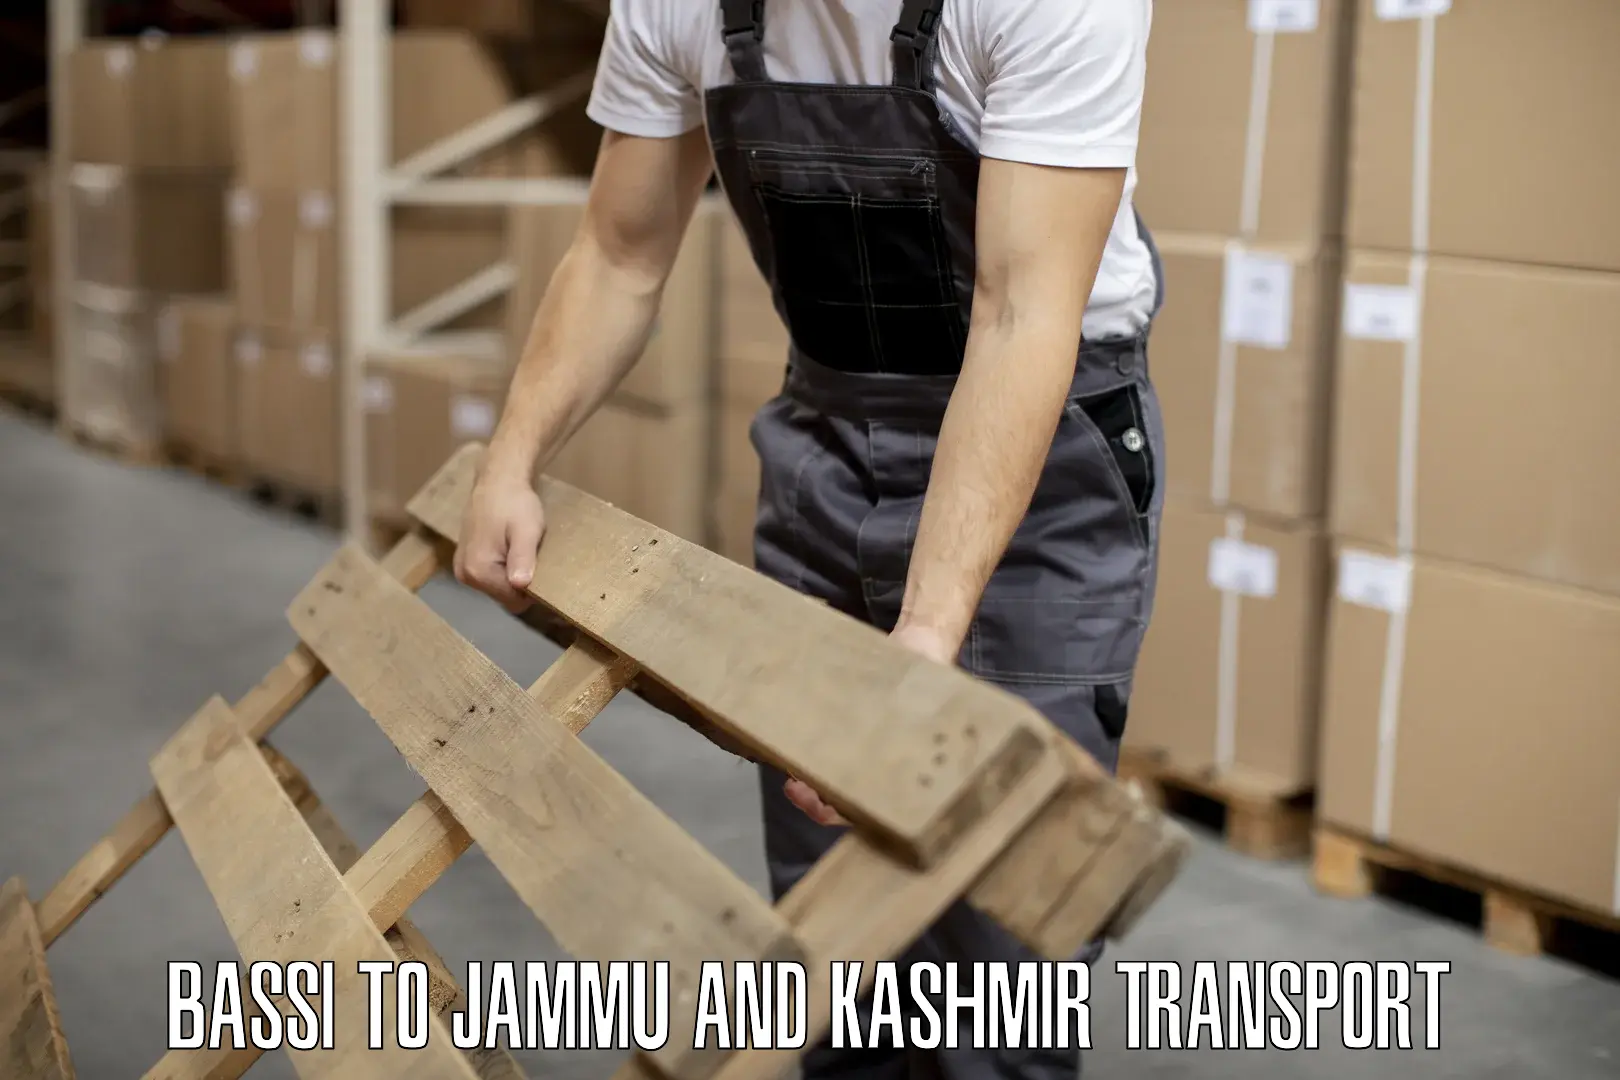 Bike transport service Bassi to Jammu